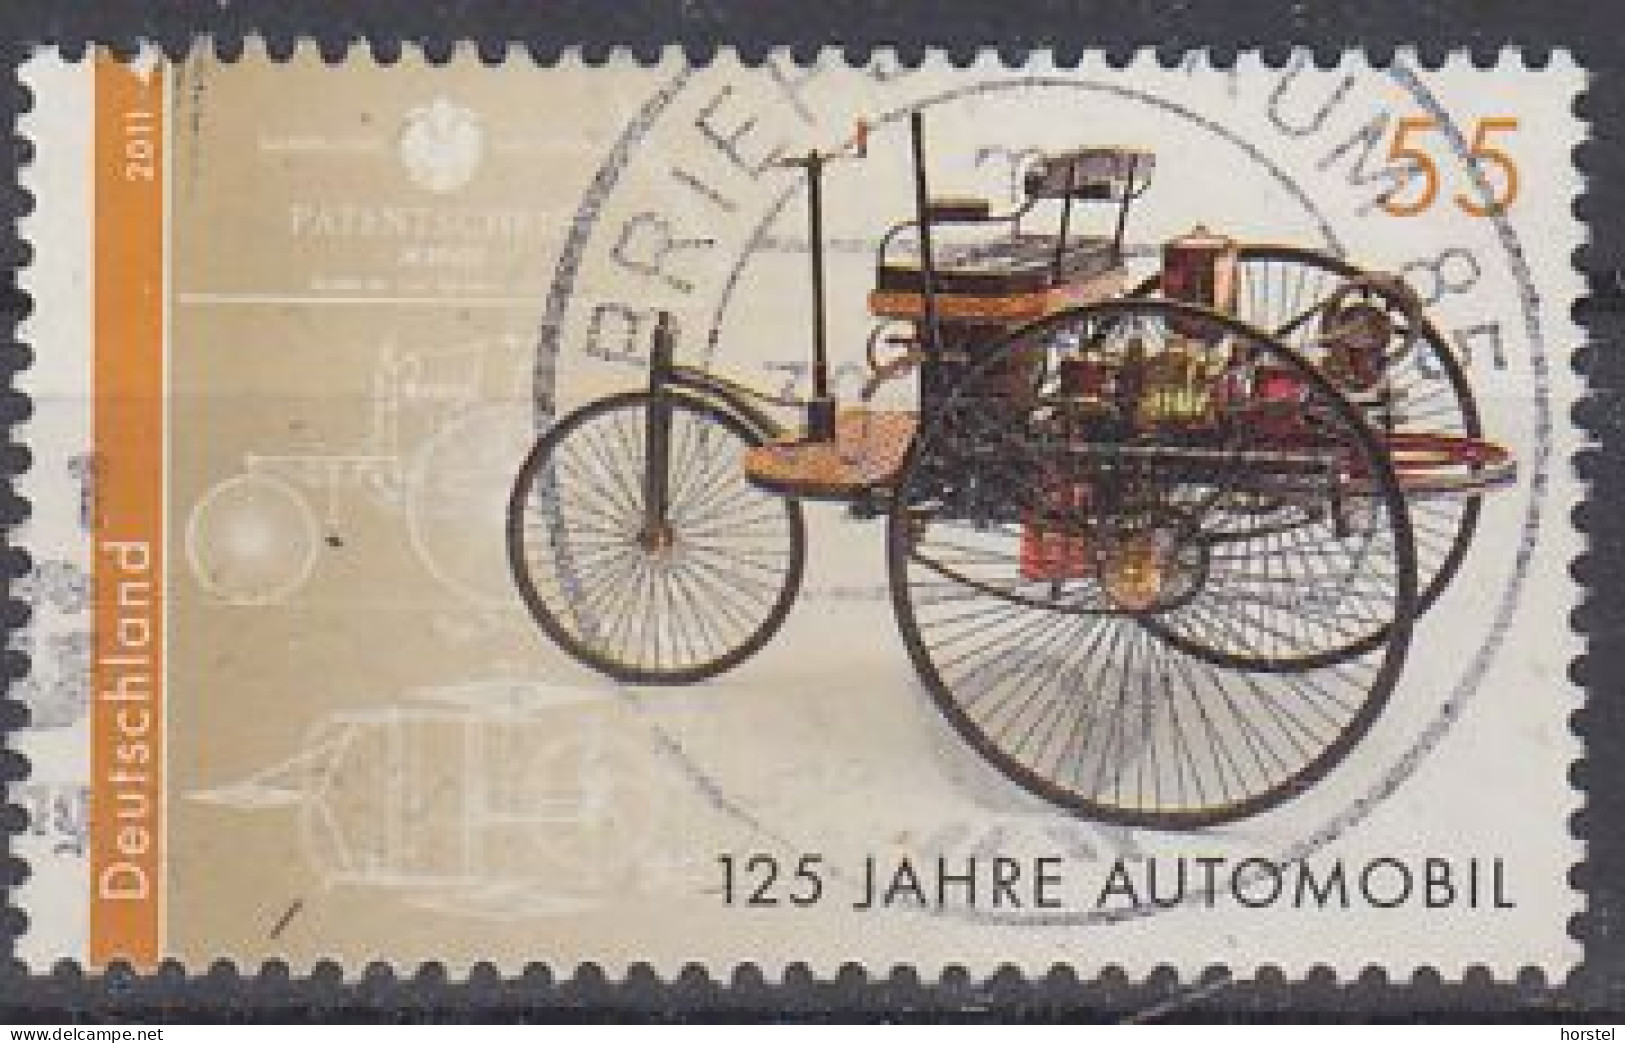 Deutschland Mi 2867  125 Jahre Automobil - Benz Patent-Motorwagen - Usati